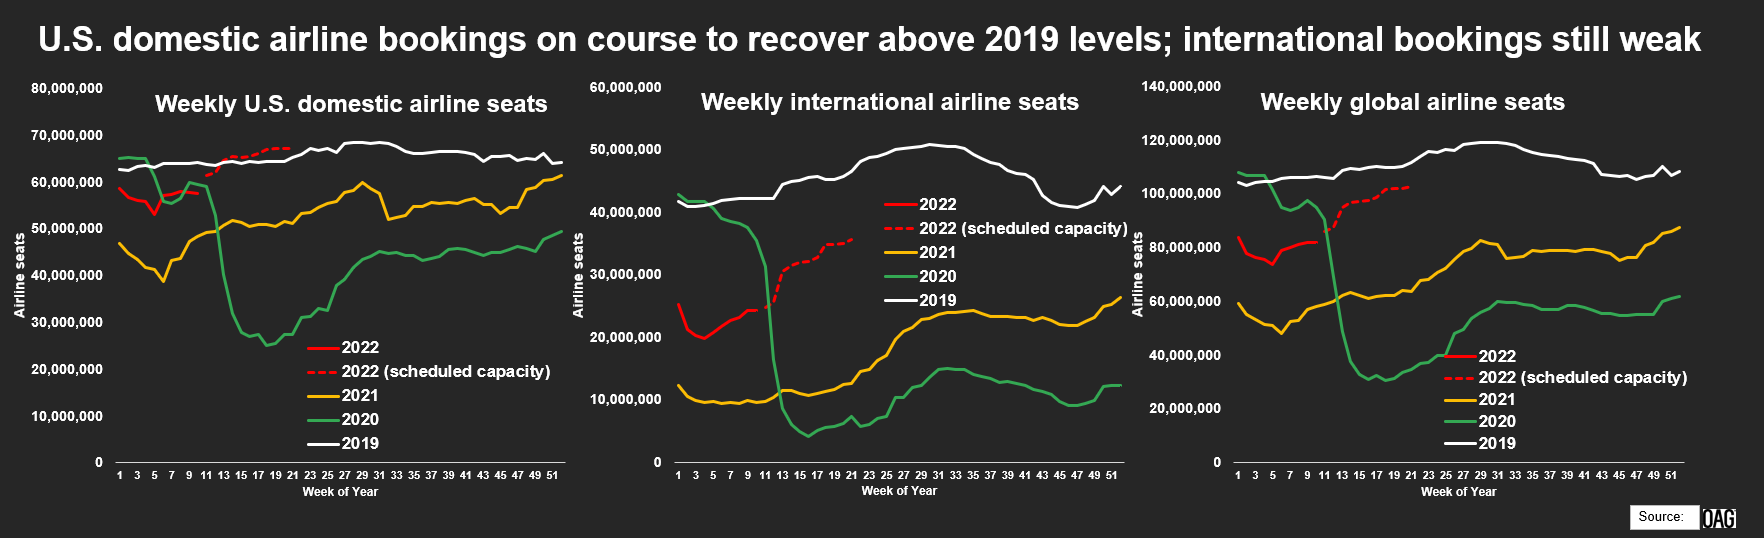 Buchungen von inländischen Fluggesellschaften in den USA auf Kurs, um sich über das Niveau von 2019 zu erholen;  Auslandsbuchungen noch schwach